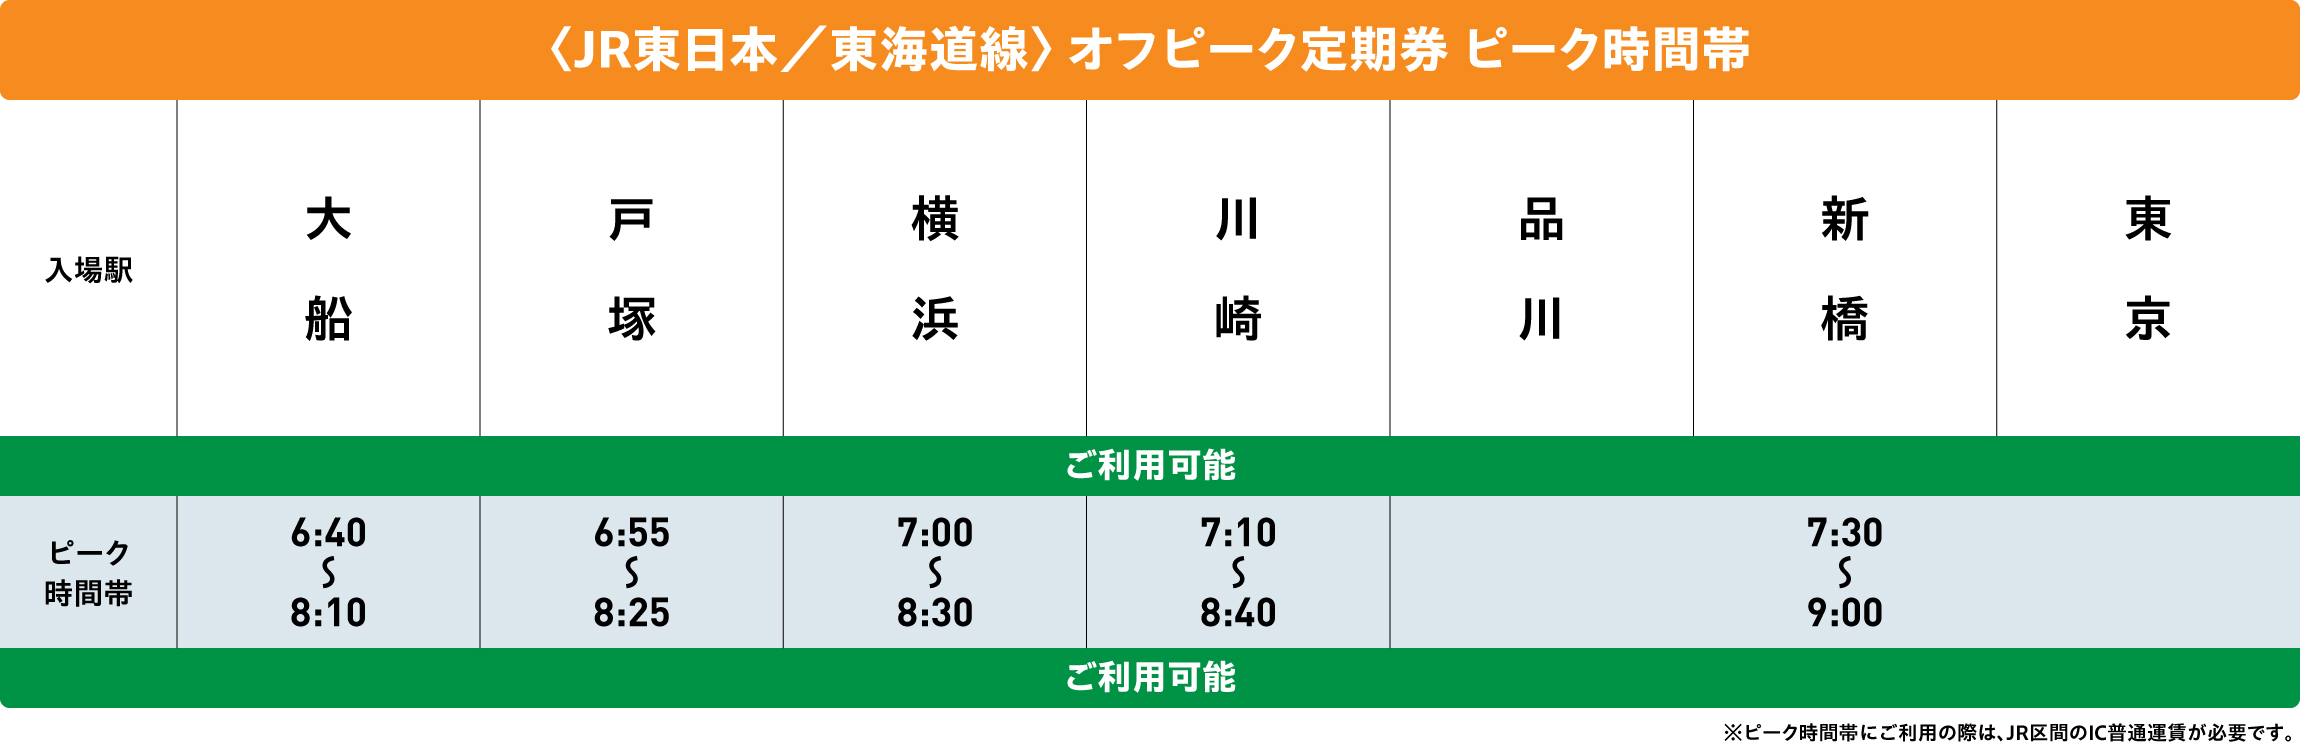 東海道線オフピークポイントサービス対象時間帯